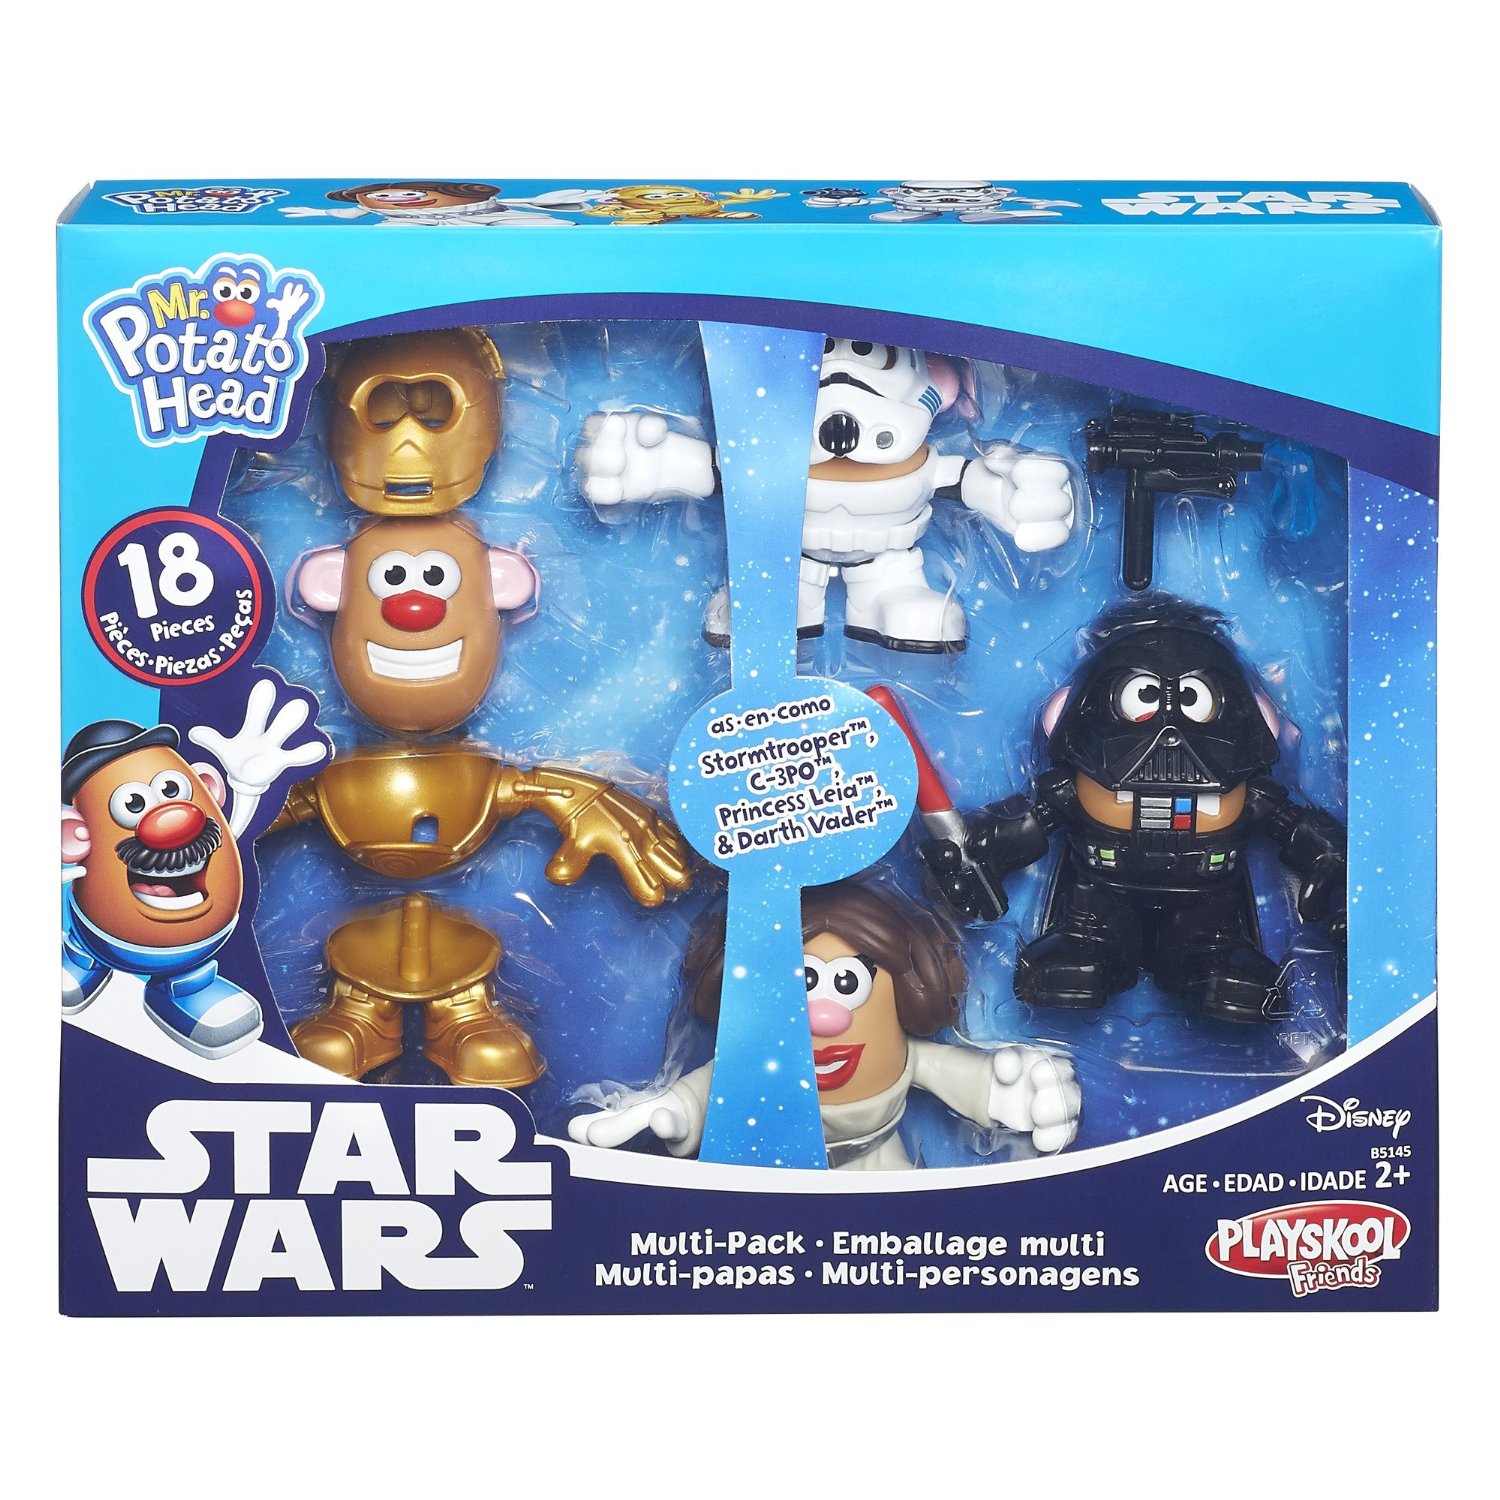 Playskool Friends Mr. Potato Head Star Wars Multi-Pack – Just $14.97!